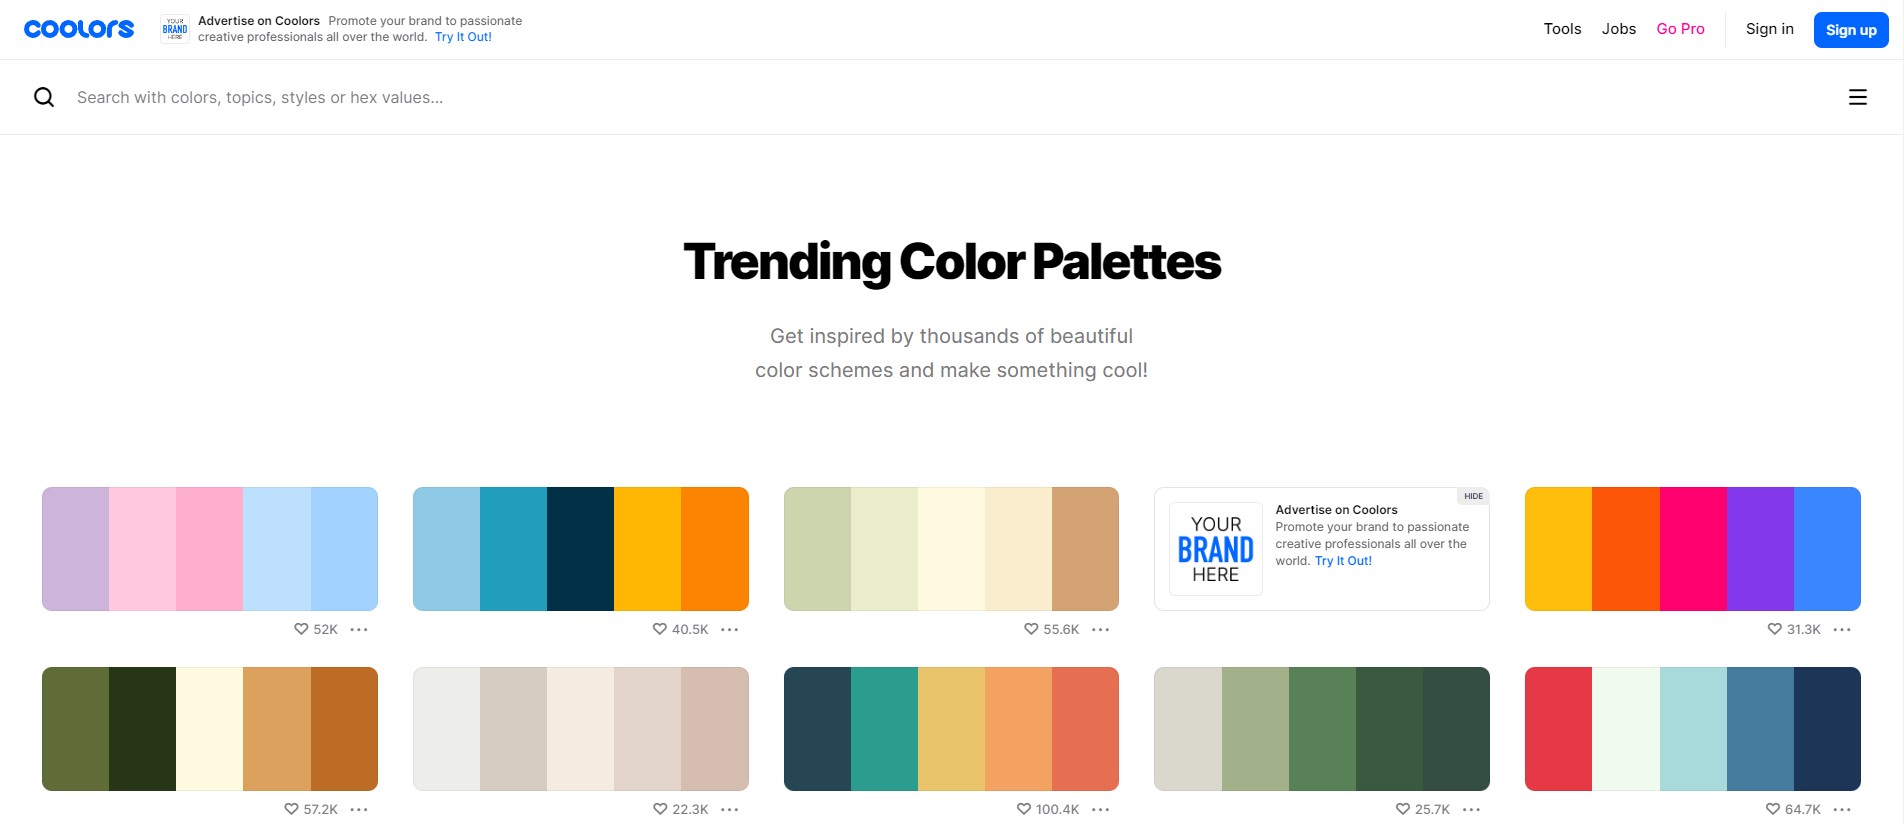 sección-de-paletas-de-colores-en-tendencia-del-sitio-web-coolors